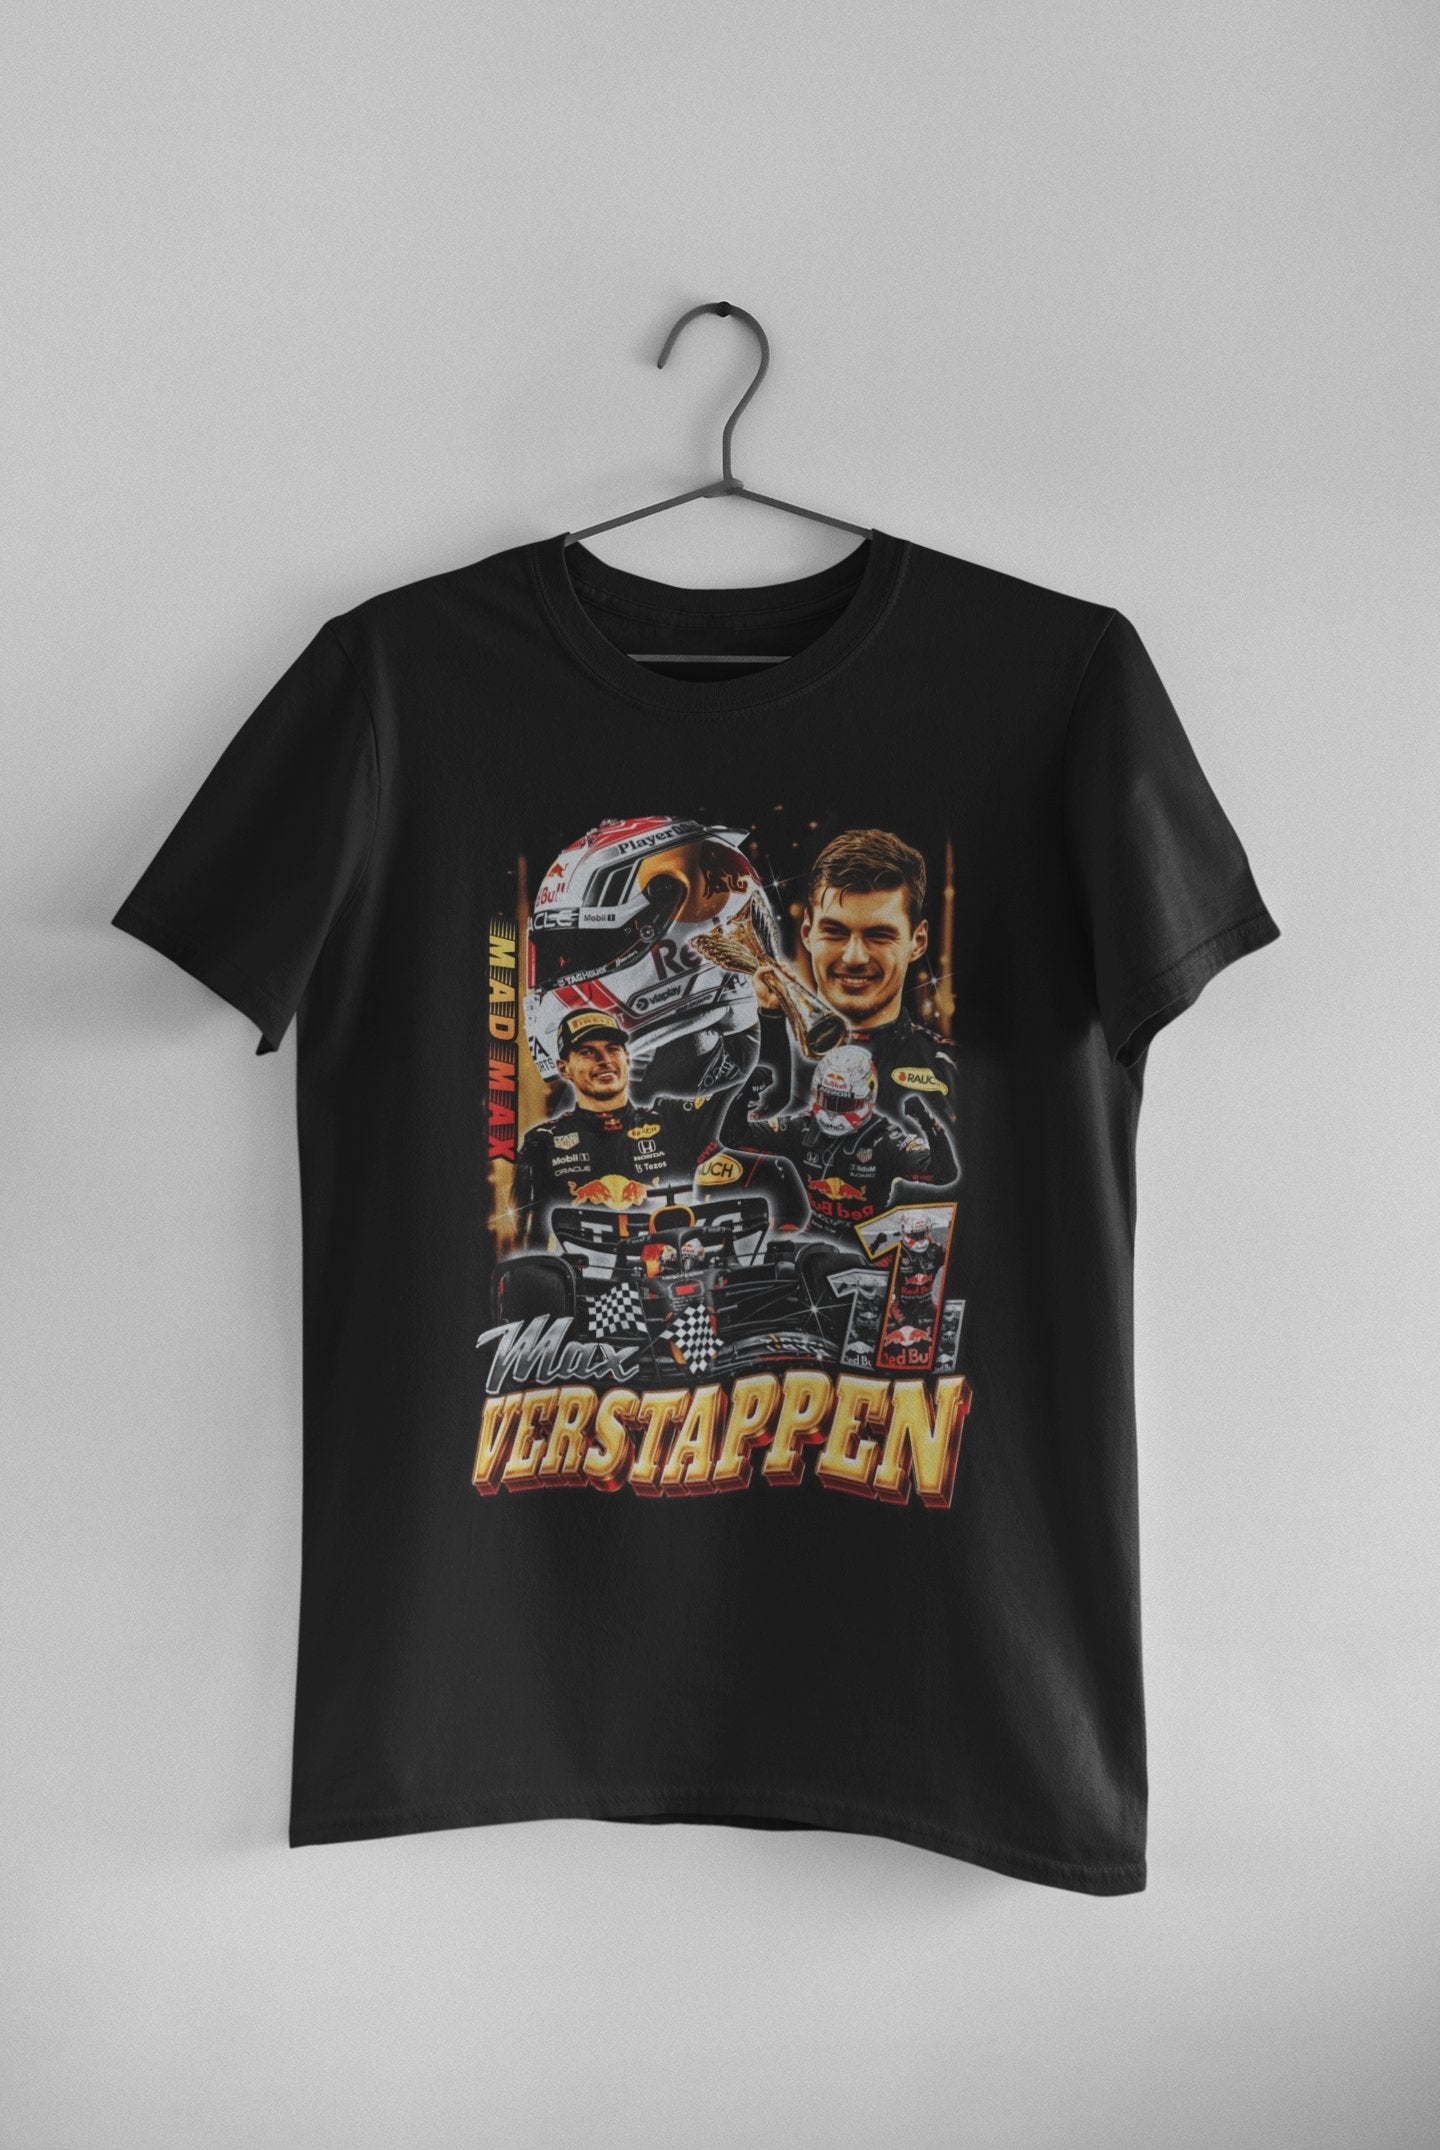 Max Verstappen T-shirts